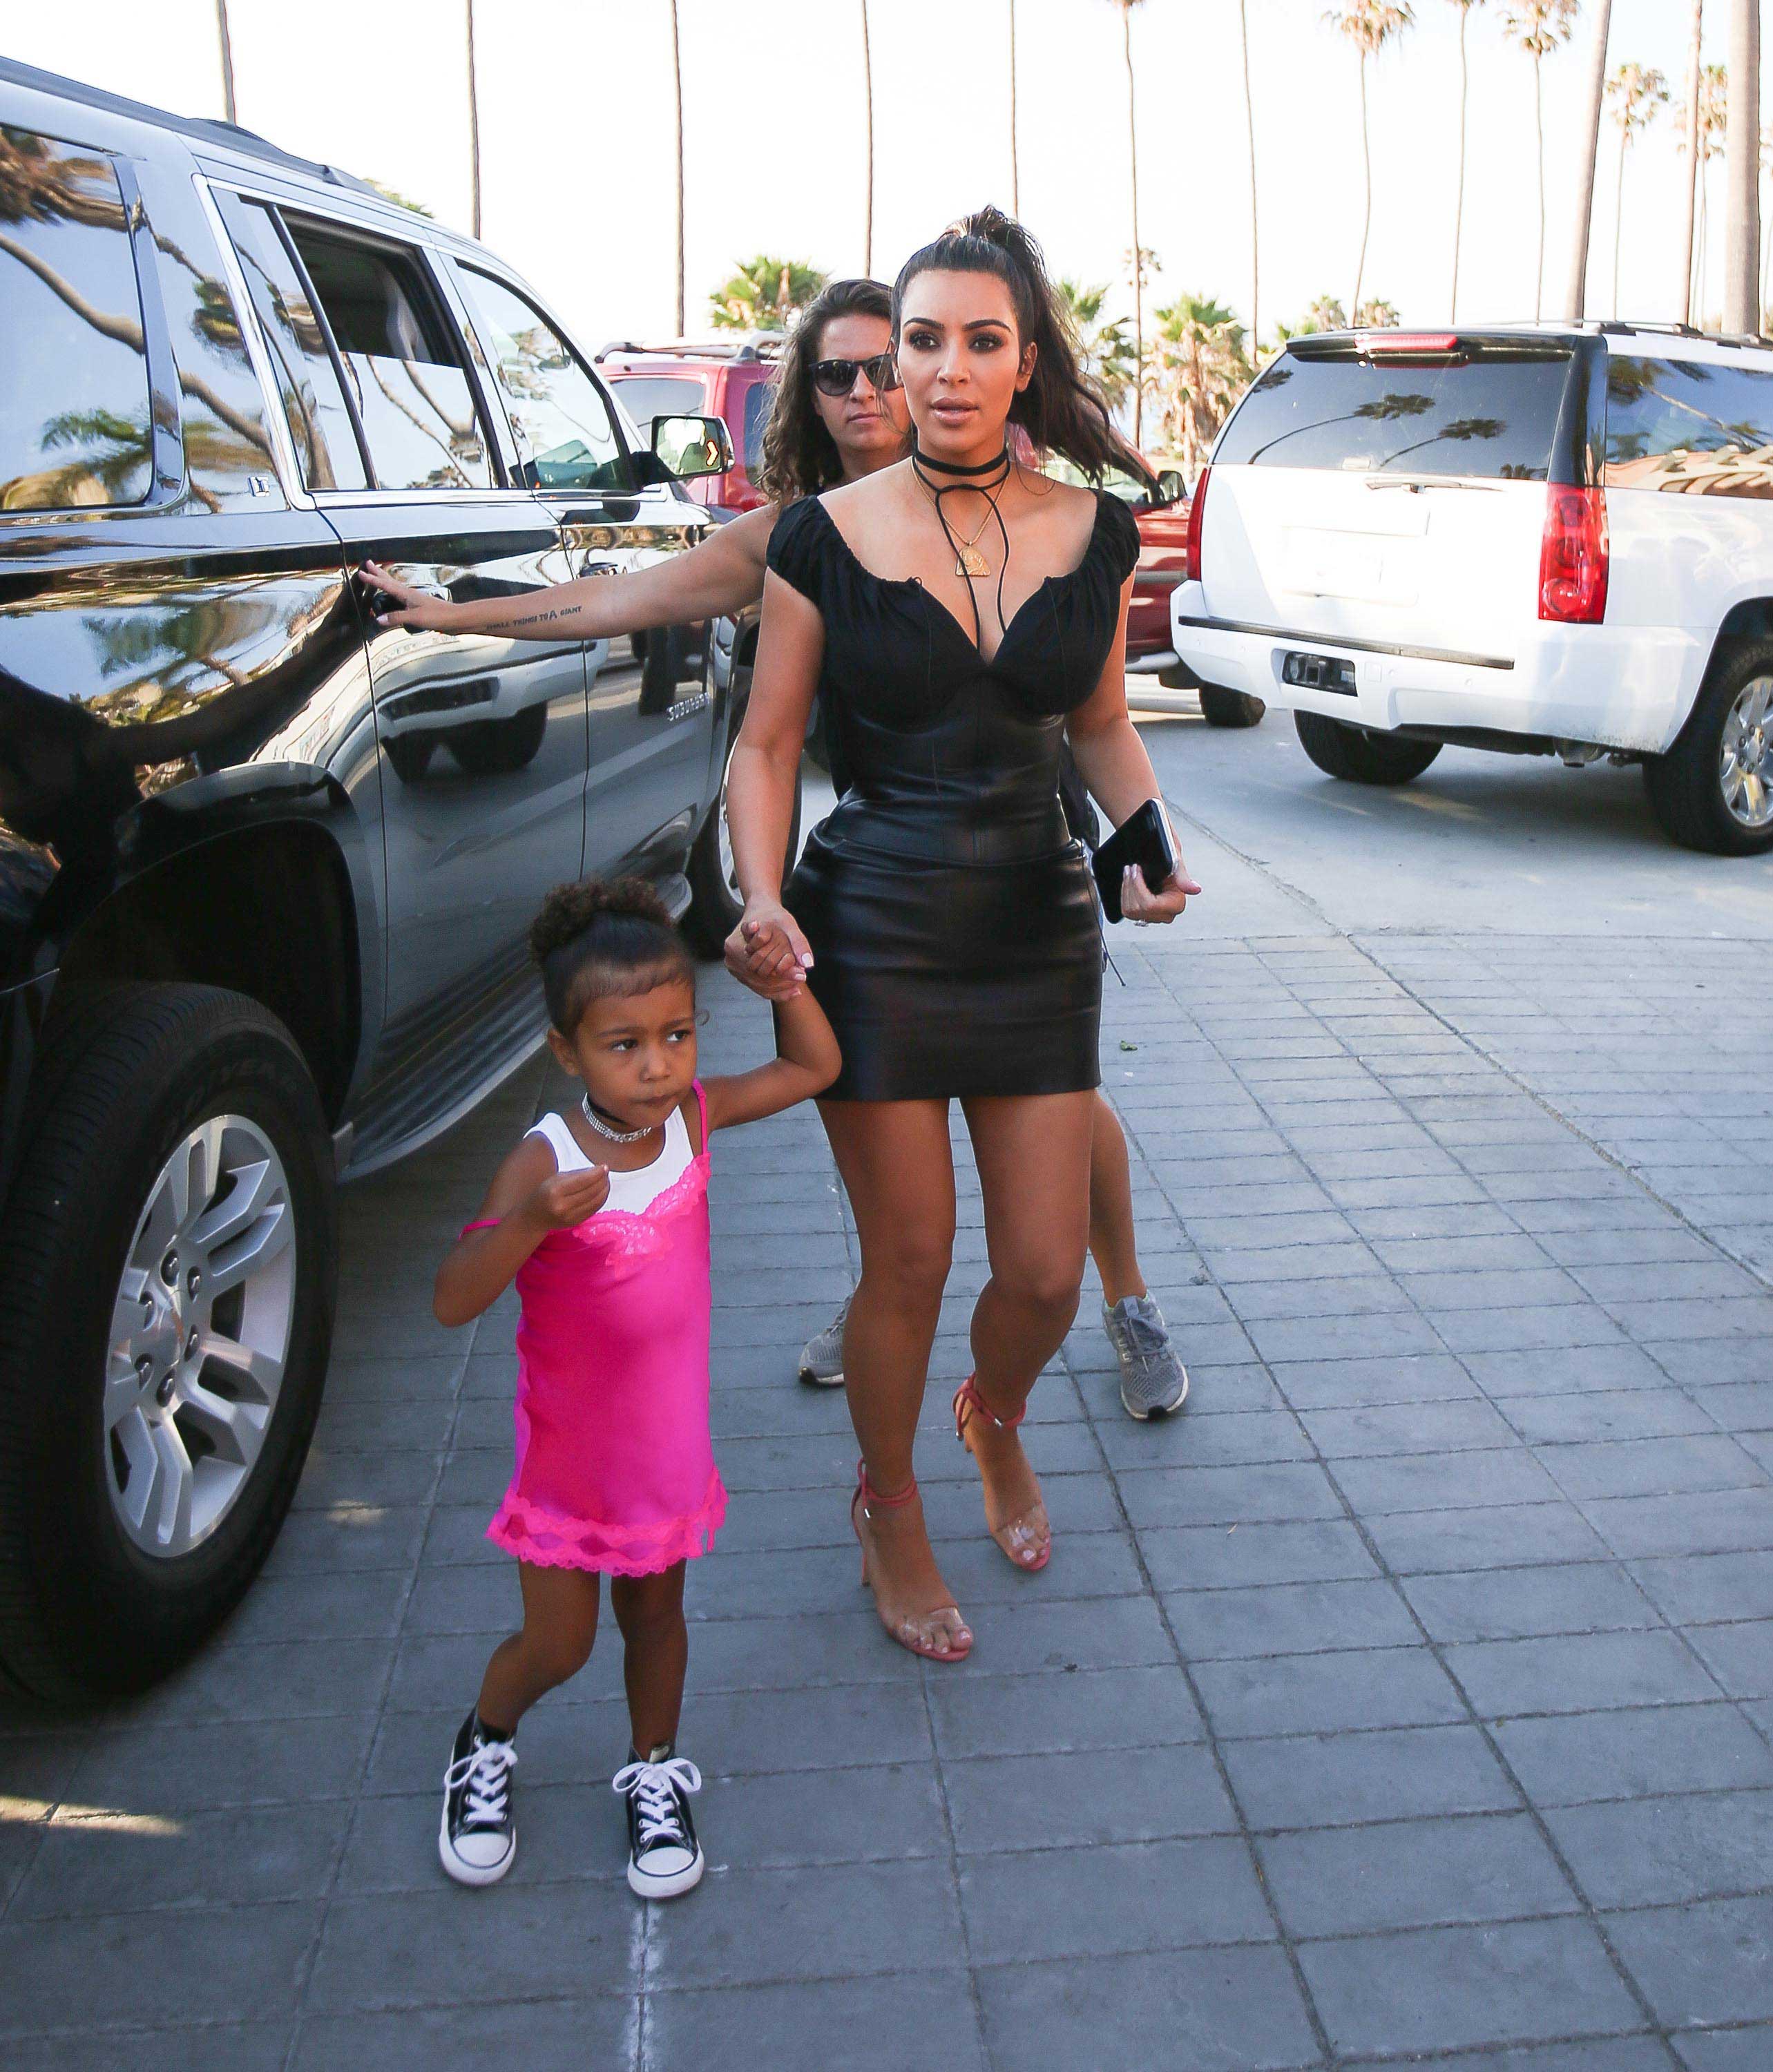 Kim Kardashian celebrating her grandmother birthday